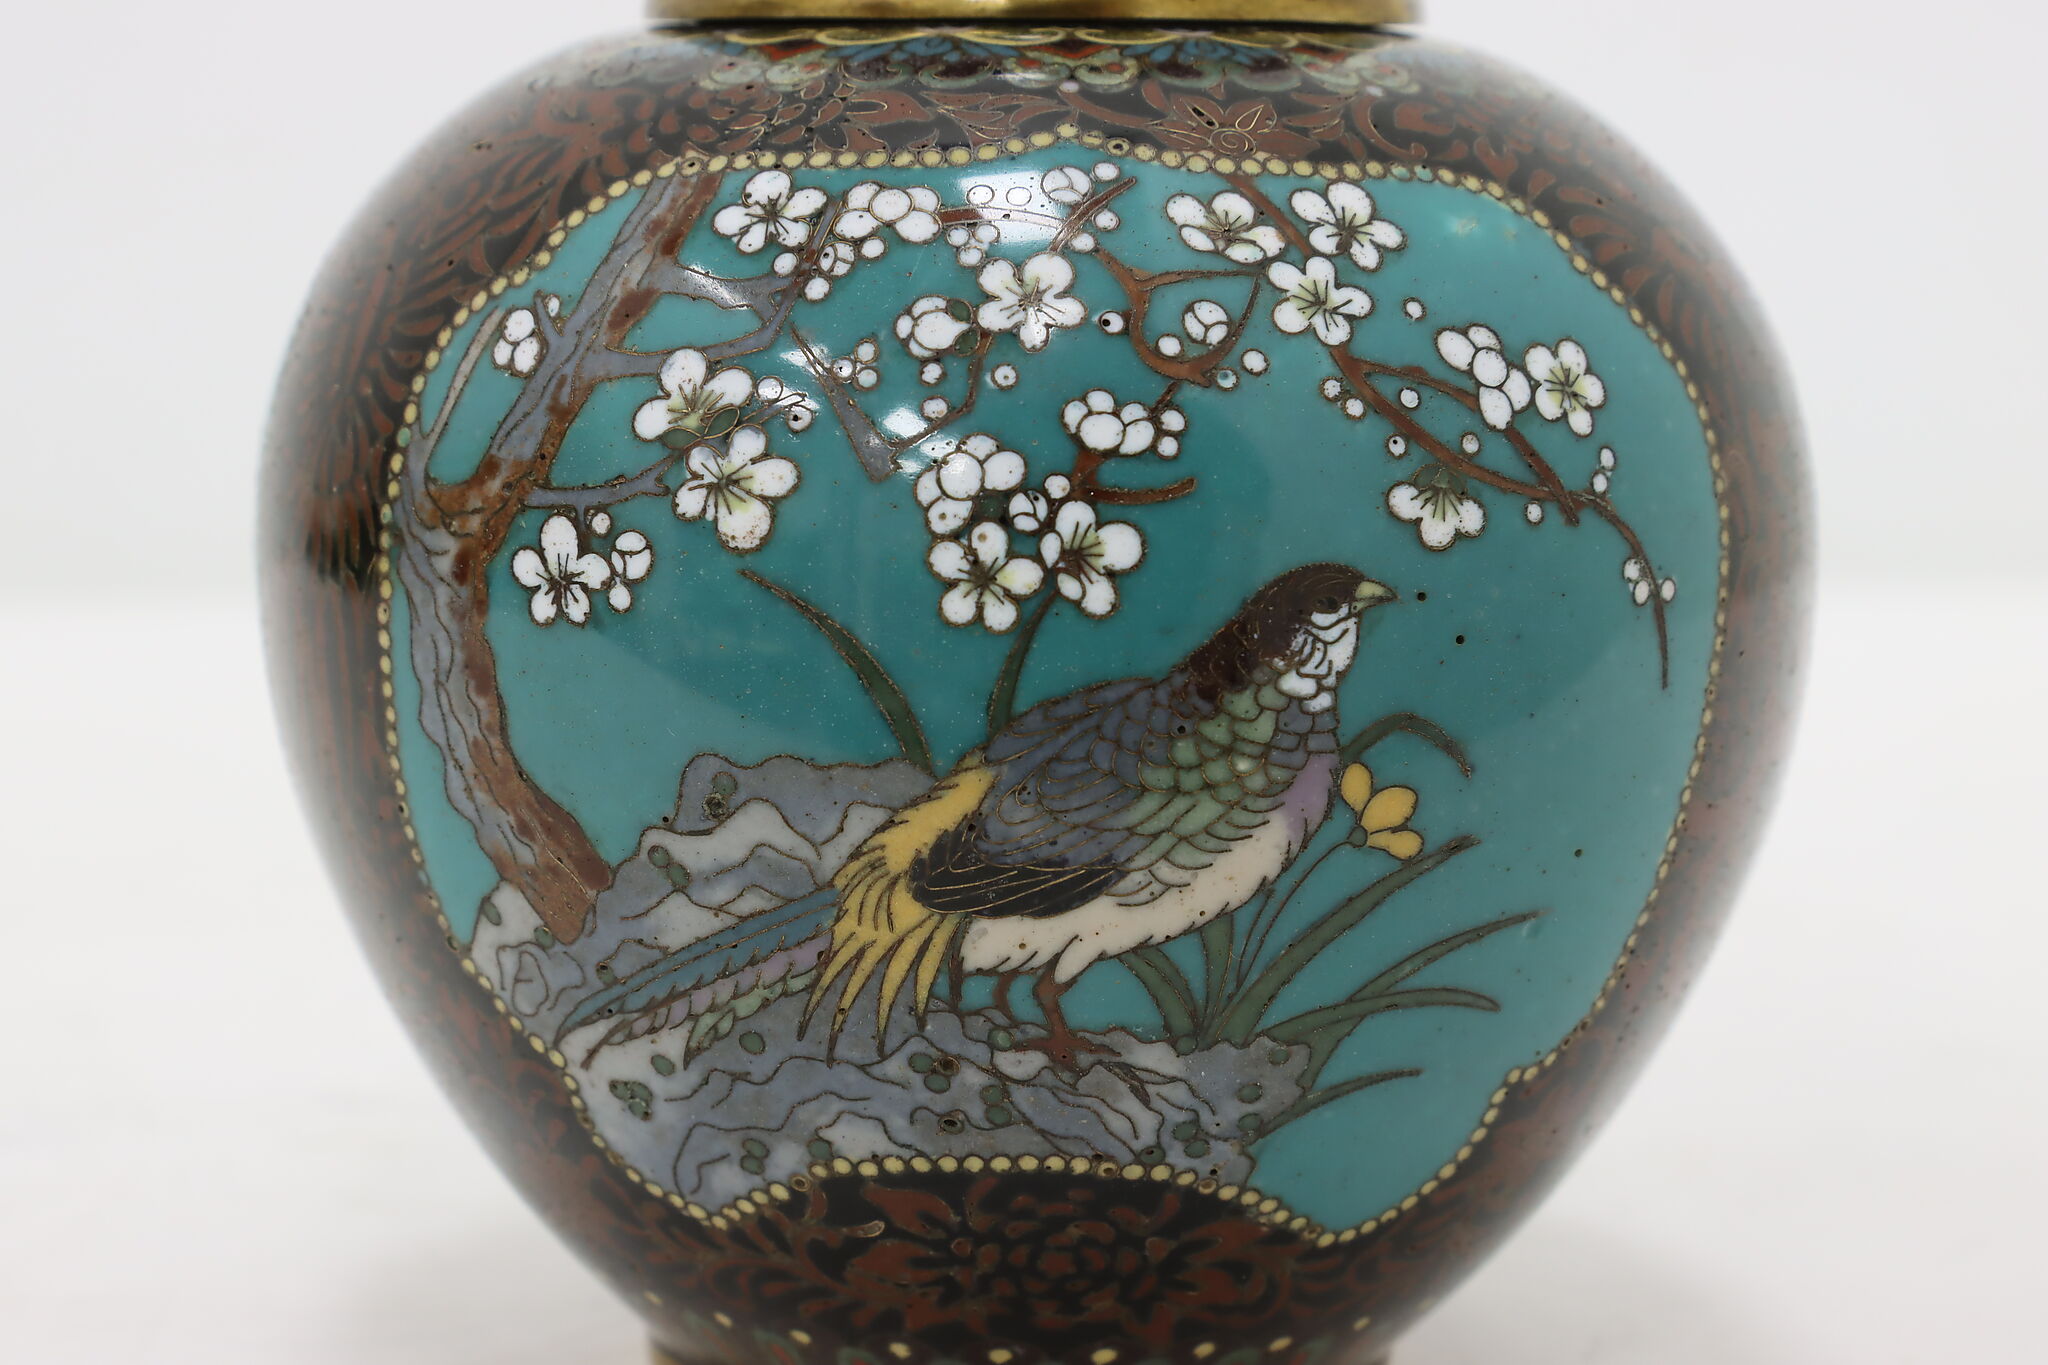 Japanese Vintage Cloisonne Inlaid Enamel Tea Jar, Birds